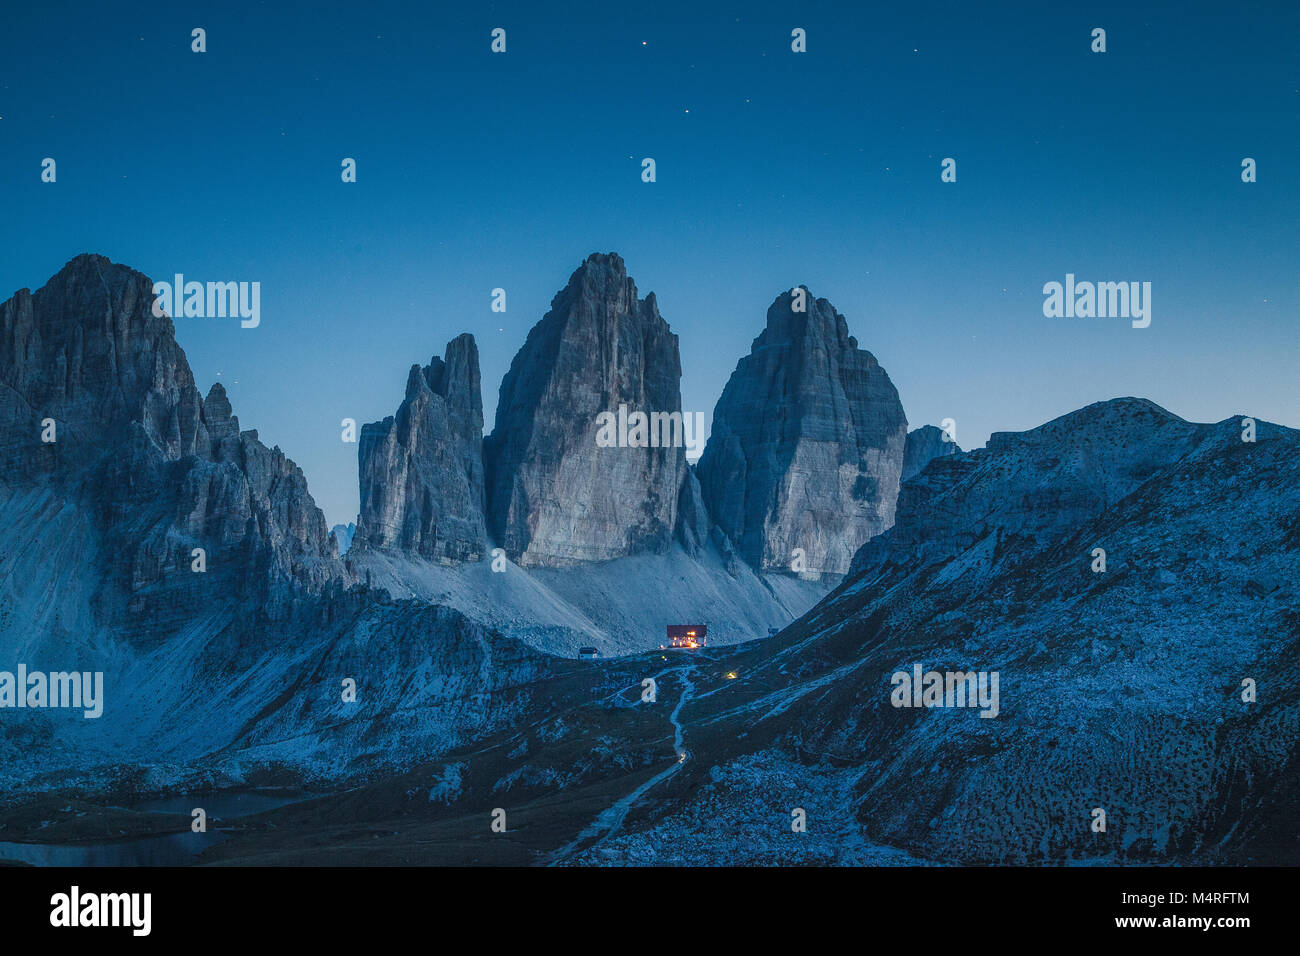 Schönen Blick auf die berühmten Drei Zinnen Berge der Dolomiten mit berühmten Rifugio Antonio Locatelli Hütte bei Nacht Stockfoto